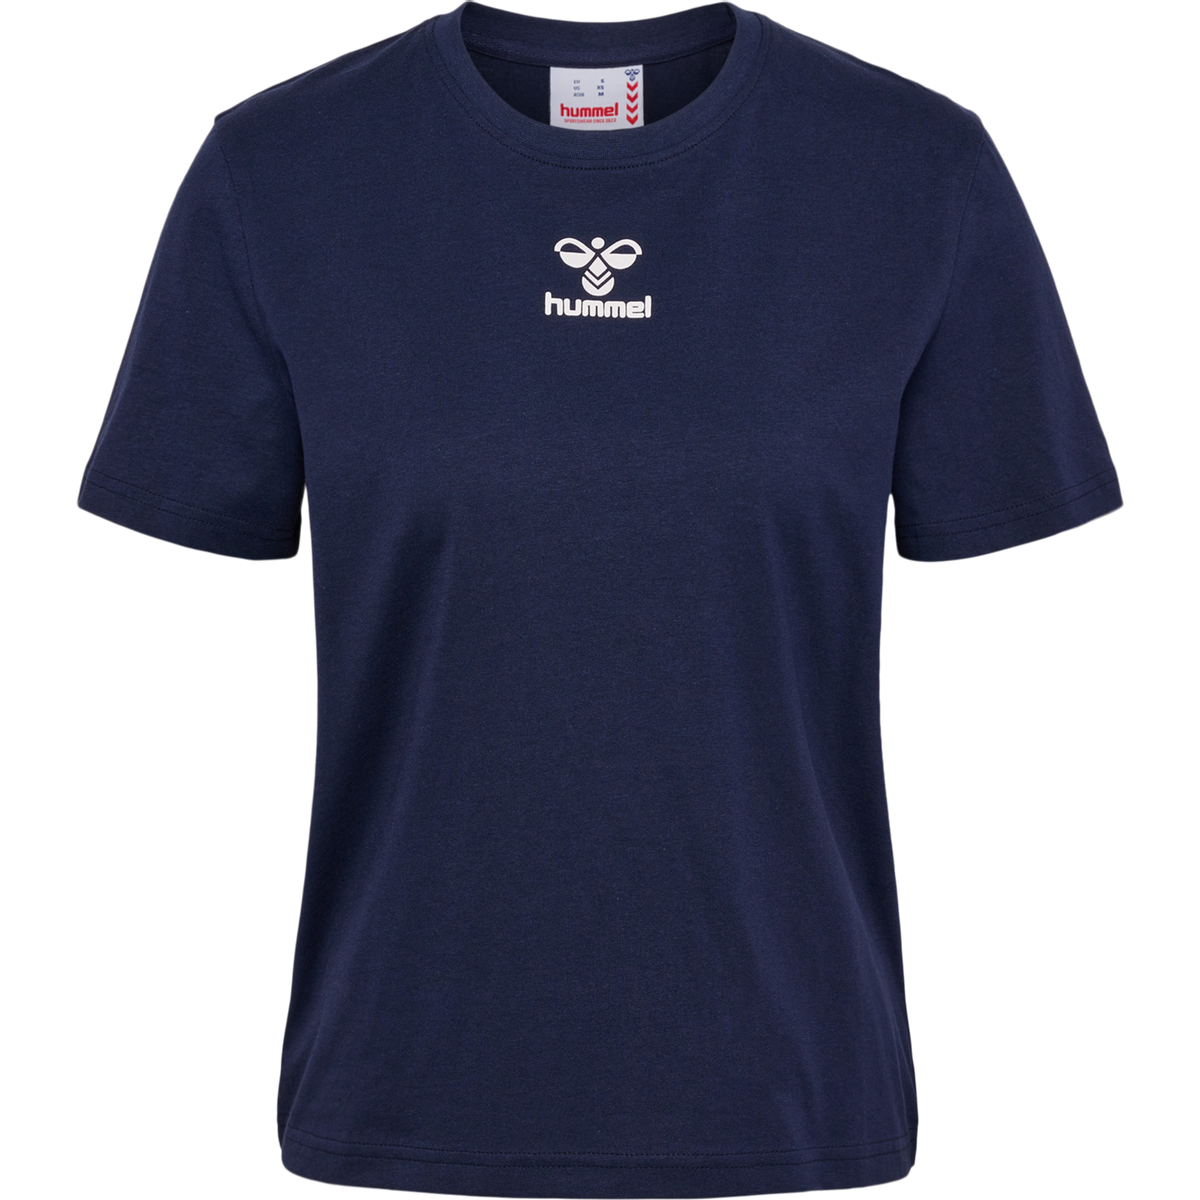 Hummel Icons tshirt W navy